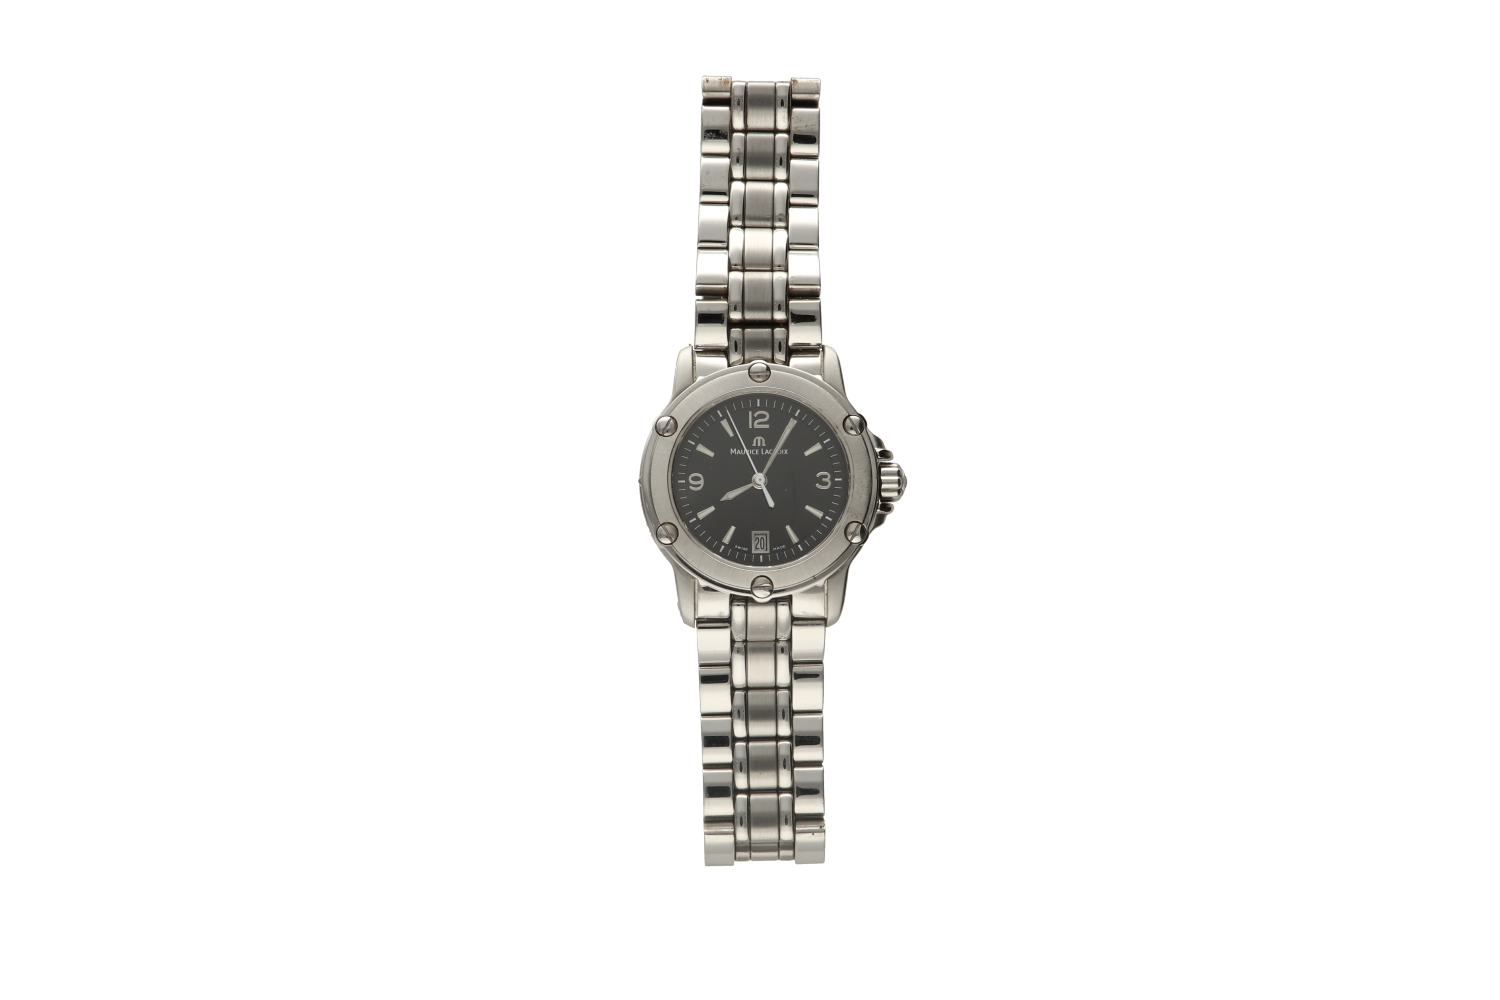 Ρολόι γυναιεκίο MAURICE LACROIX, TIAGO 89819 2402, με μπρασελέ σε ατσάλι και μαύρο καντράν 